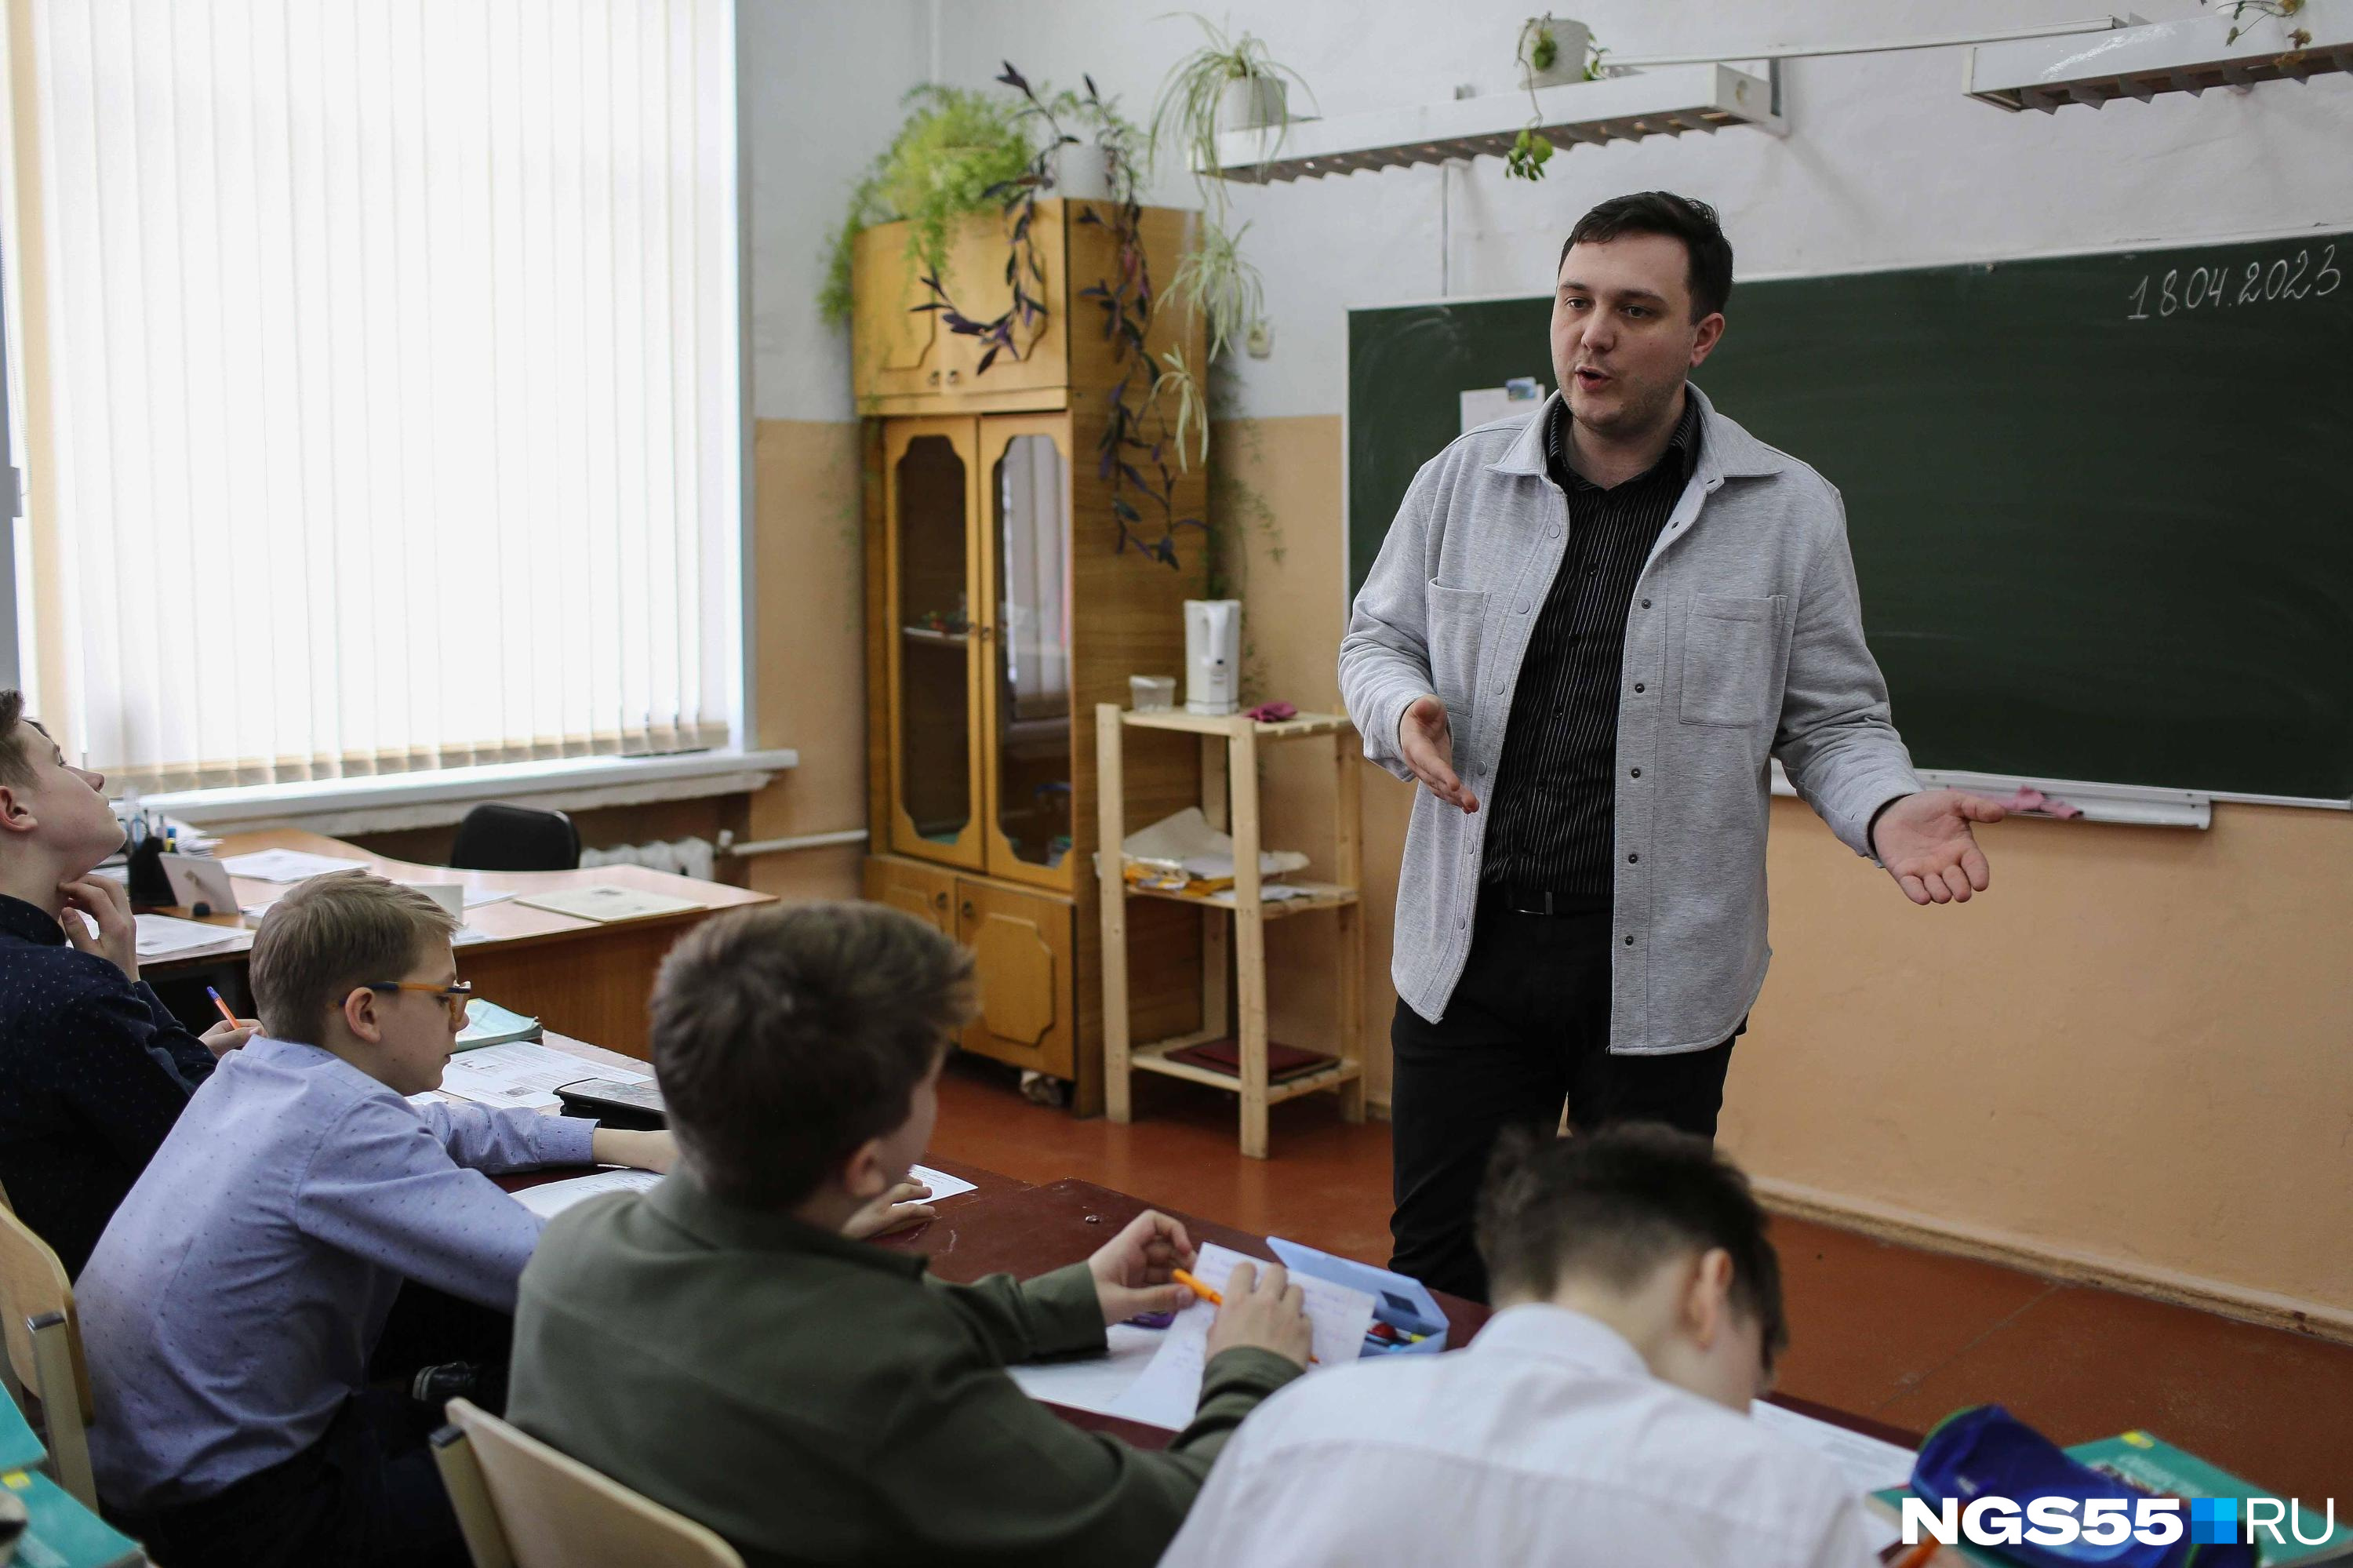 Правительство Забайкалья выплатит 13-ю зарплату учителям ради Путина